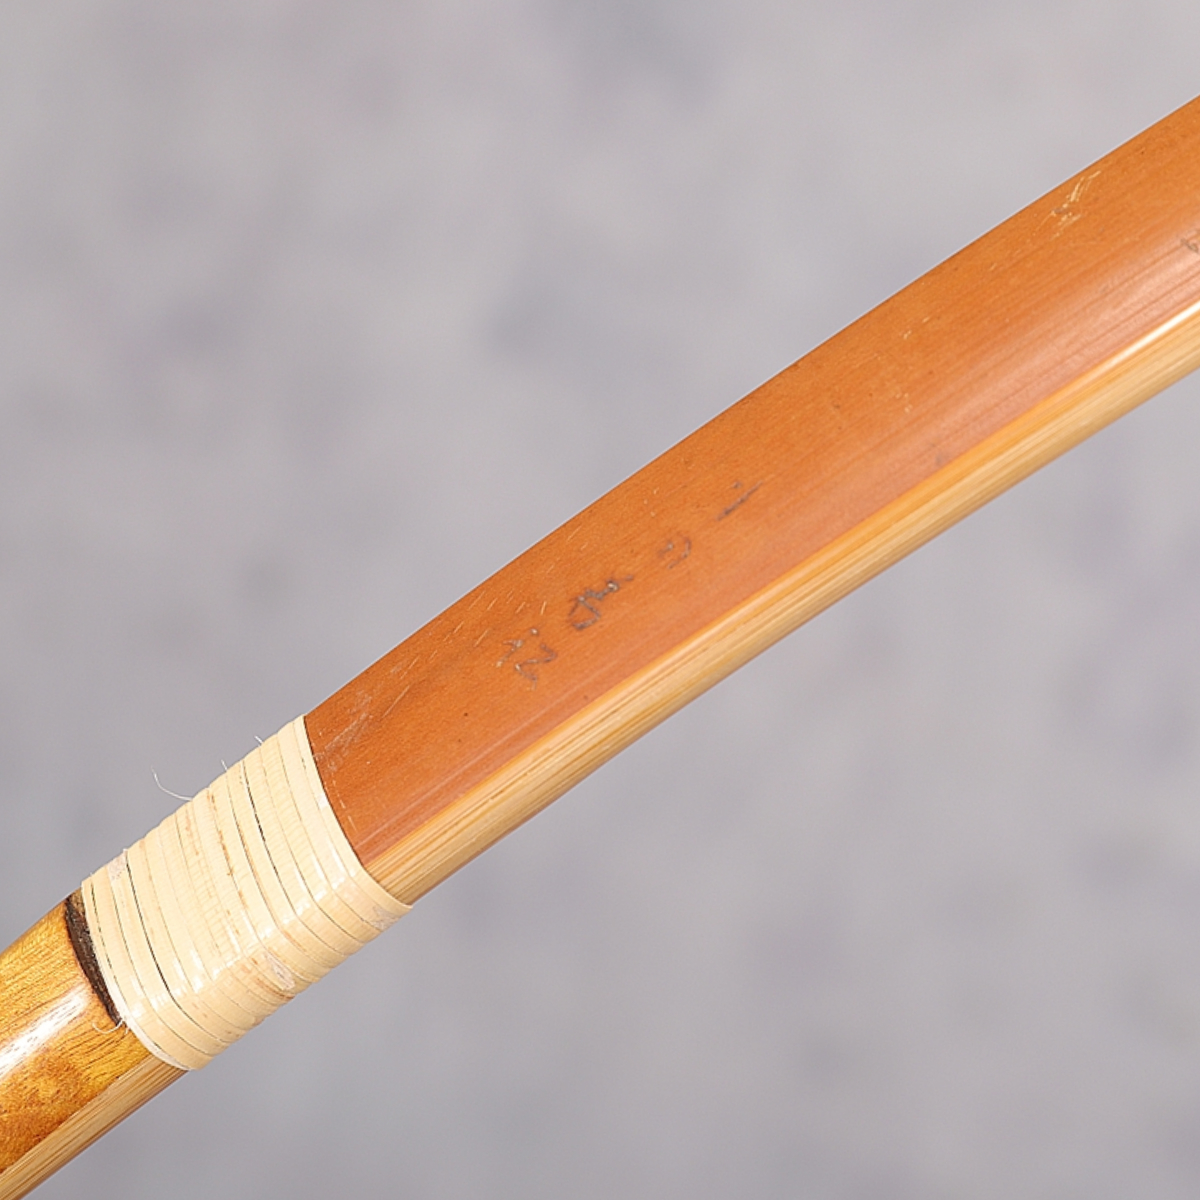 日本最級 弓術 弓道 外竹替え済 四方竹 合成接着 並寸 12.5kg 竹弓